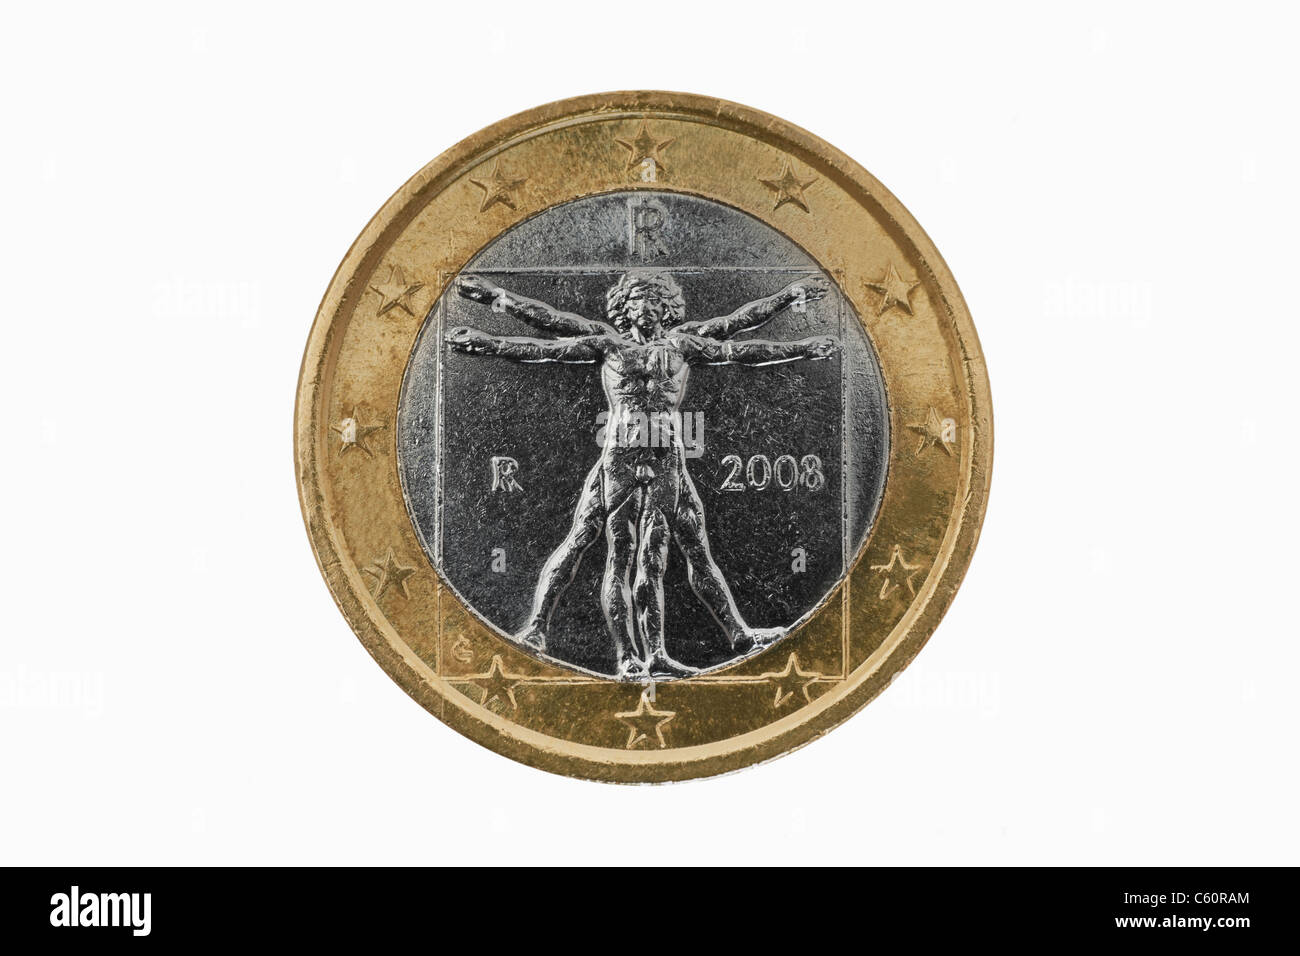 Detailansicht der Rückseite mit 1- Euro Münze aus Italien | photo détail d'un verso d'une pièce de 1 Euro de l'Italie Banque D'Images